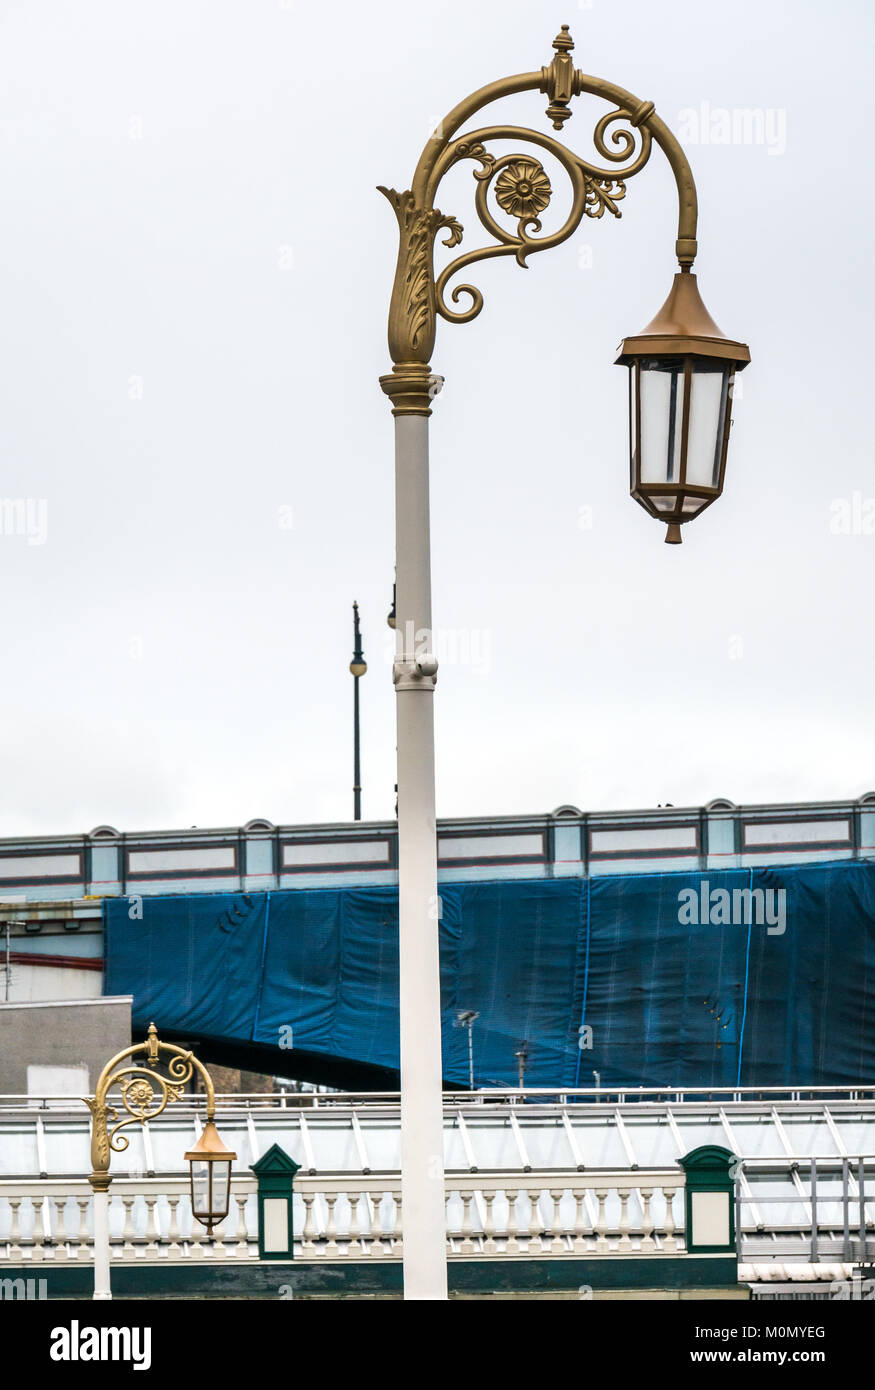 Altmodische gold verzierten viktorianischen Lampe Beiträge, Eintritt zur Waverley Station, Edinburgh, Schottland, Großbritannien, mit North Bridge im Hintergrund Stockfoto